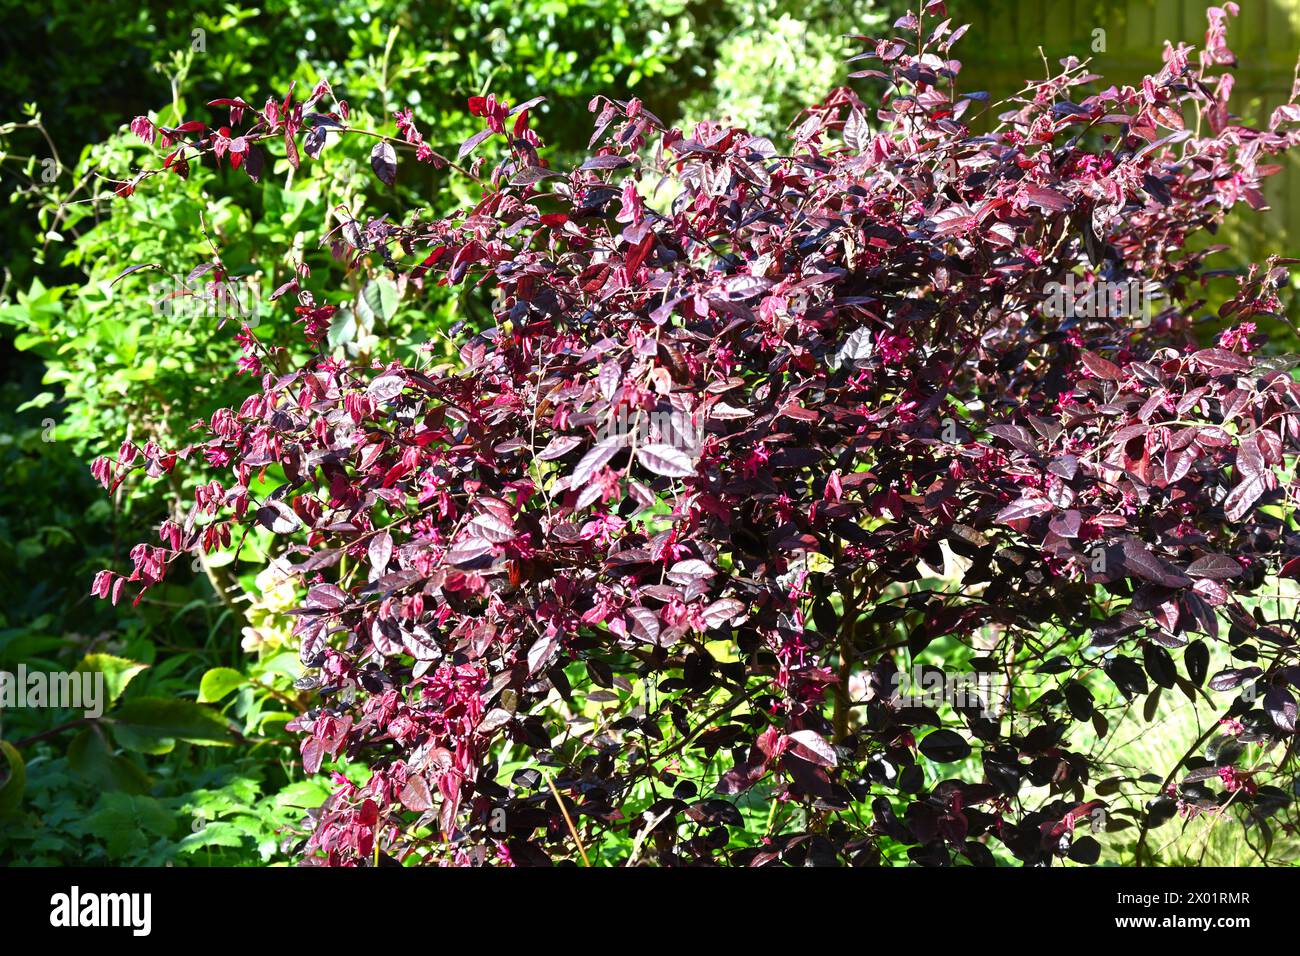 Rot/violett immergrün Laub von Loropetalum chinensis Fire Dance oder chinesischer Hamamelis, die im britischen Gartenmarsch wächst Stockfoto